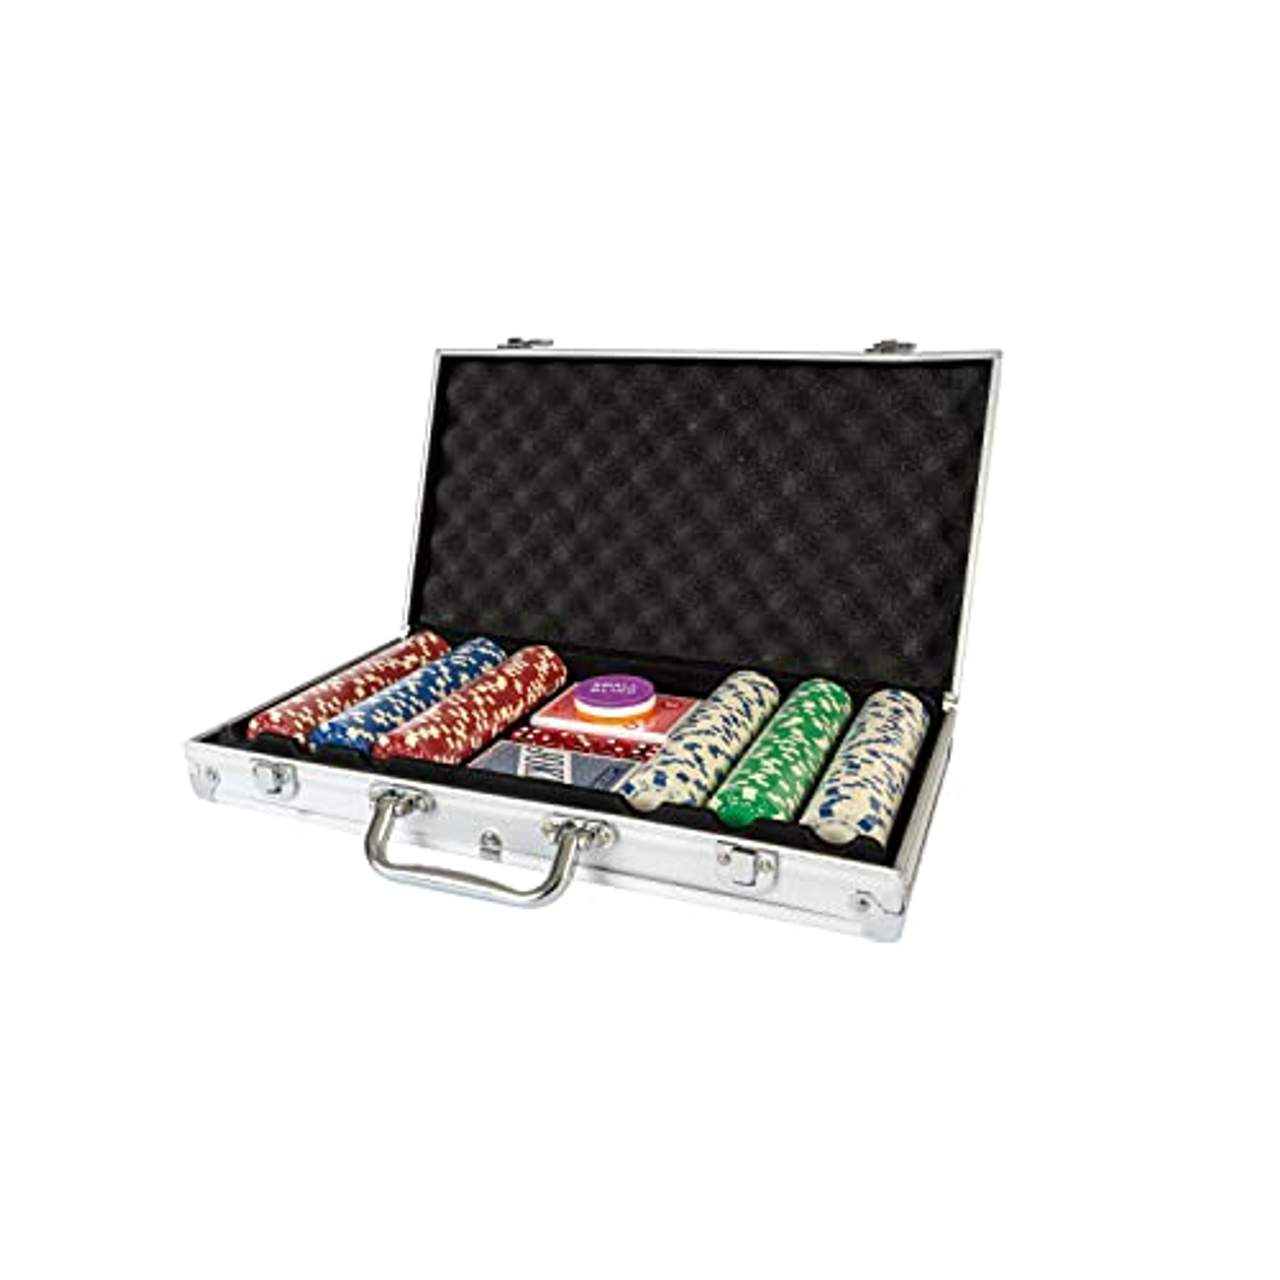 ASS 22501501 Altenburger 22501501-Poker Koffer